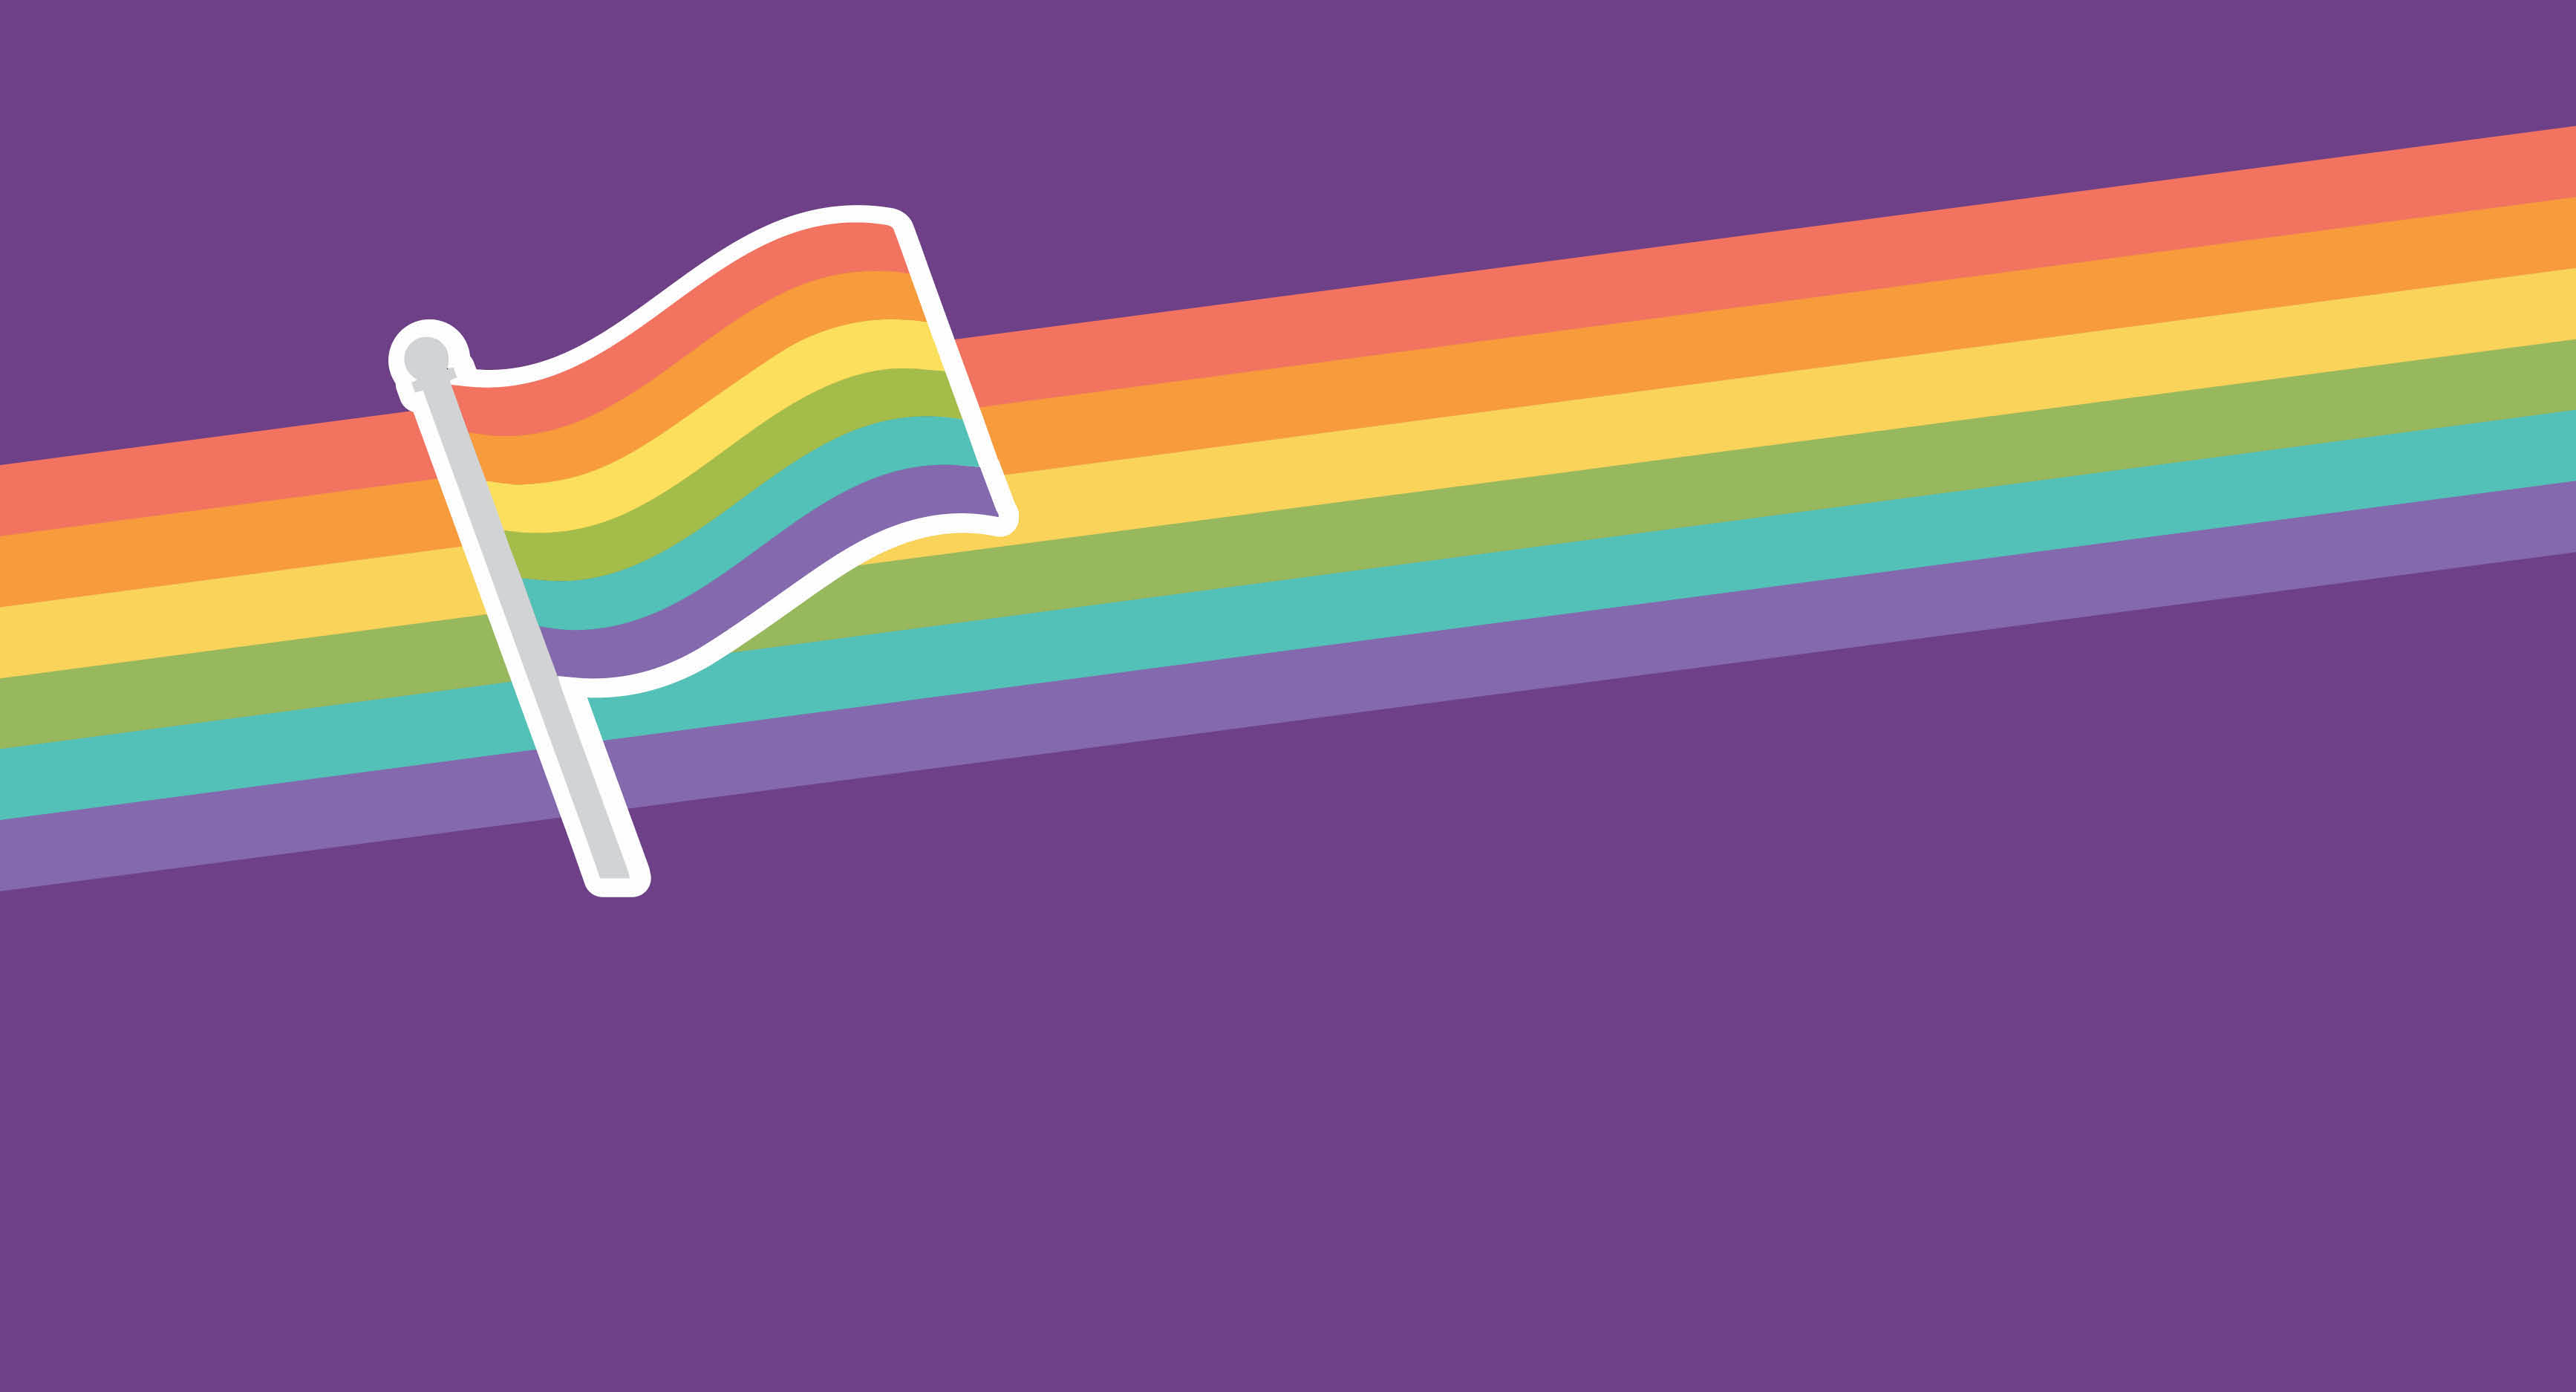 Minus18 cung cấp tài nguyên kỹ thuật số cho ngày đeo màu tím, giúp các bạn trẻ tìm hiểu về đa dạng giới tính và quyền LGBTIQ+. Hãy cùng xem ảnh liên quan để truy cập vào các tài nguyên hữu ích này và cộng tác với chúng tôi trong cuộc chiến cho sự bình đẳng và chấp nhận tất cả mọi người.